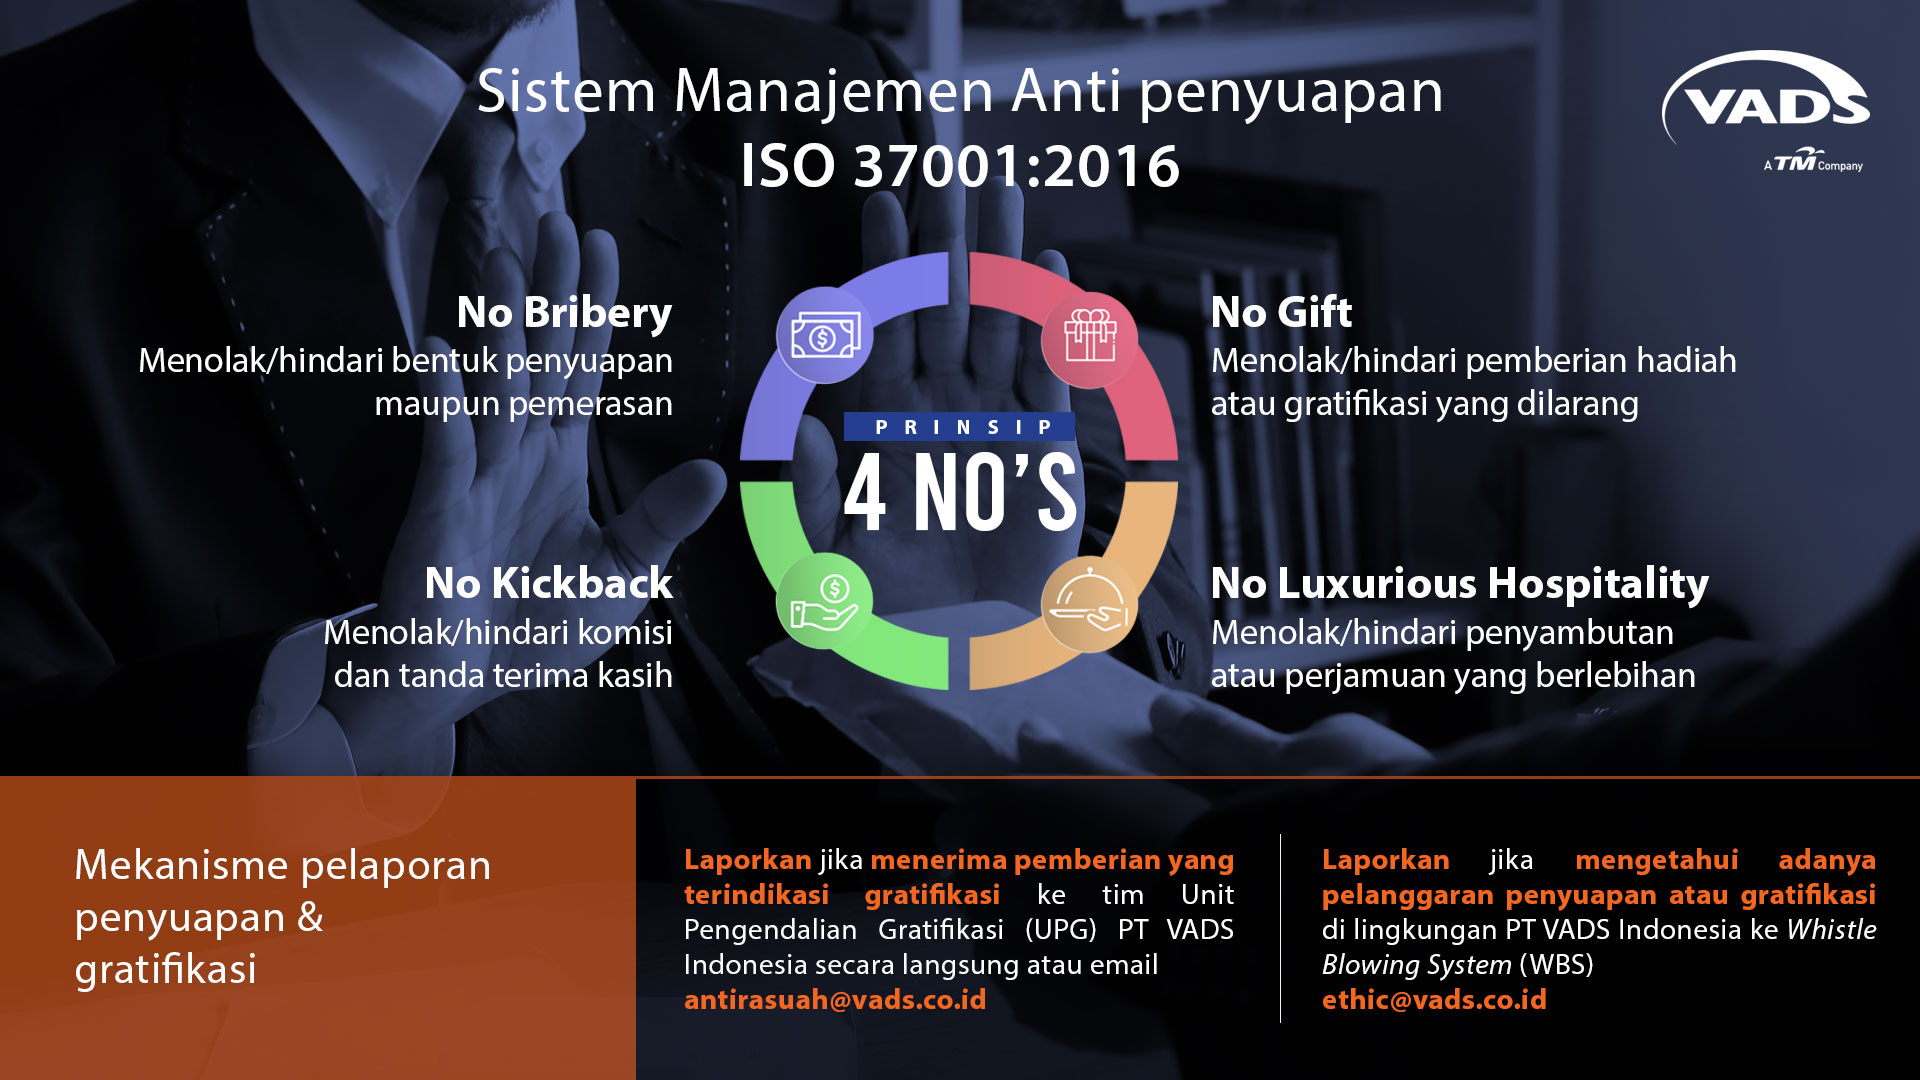 Image of PT VADS Indonesia Berkomitmen Menerapkan Kebijakan Sistem Manajemen Anti Penyuapan ISO 37001:2016